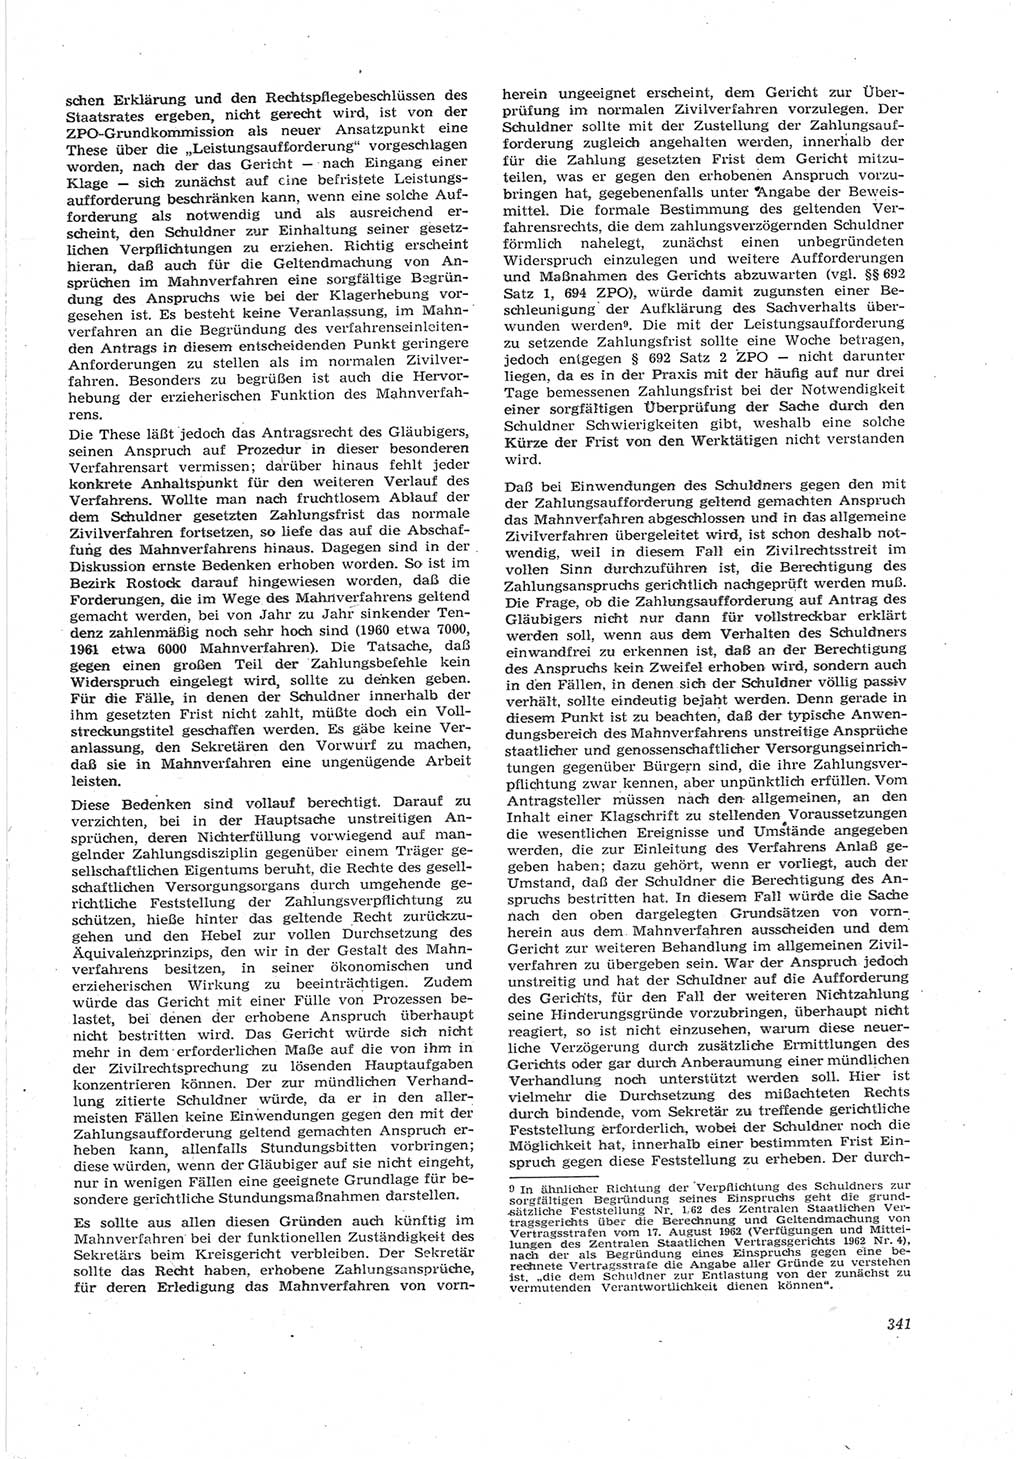 Neue Justiz (NJ), Zeitschrift für Recht und Rechtswissenschaft [Deutsche Demokratische Republik (DDR)], 17. Jahrgang 1963, Seite 341 (NJ DDR 1963, S. 341)